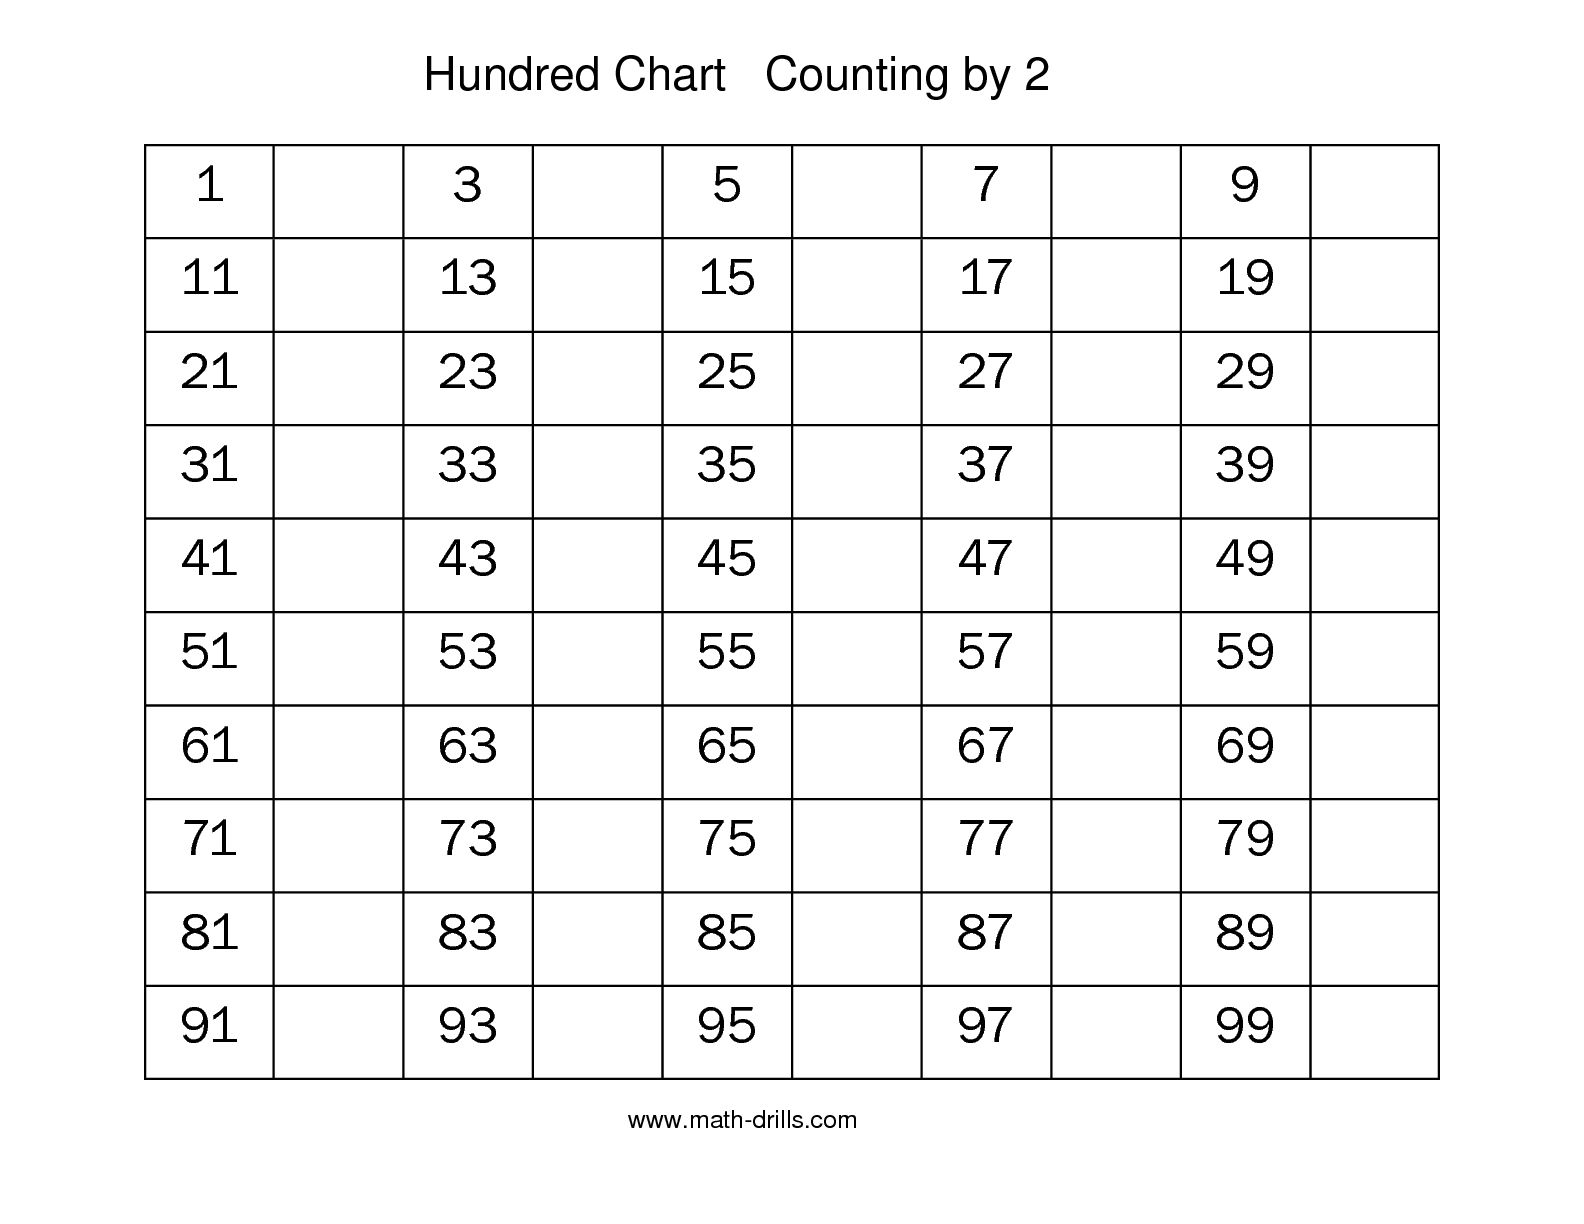 8-missing-number-puzzle-worksheet-worksheeto